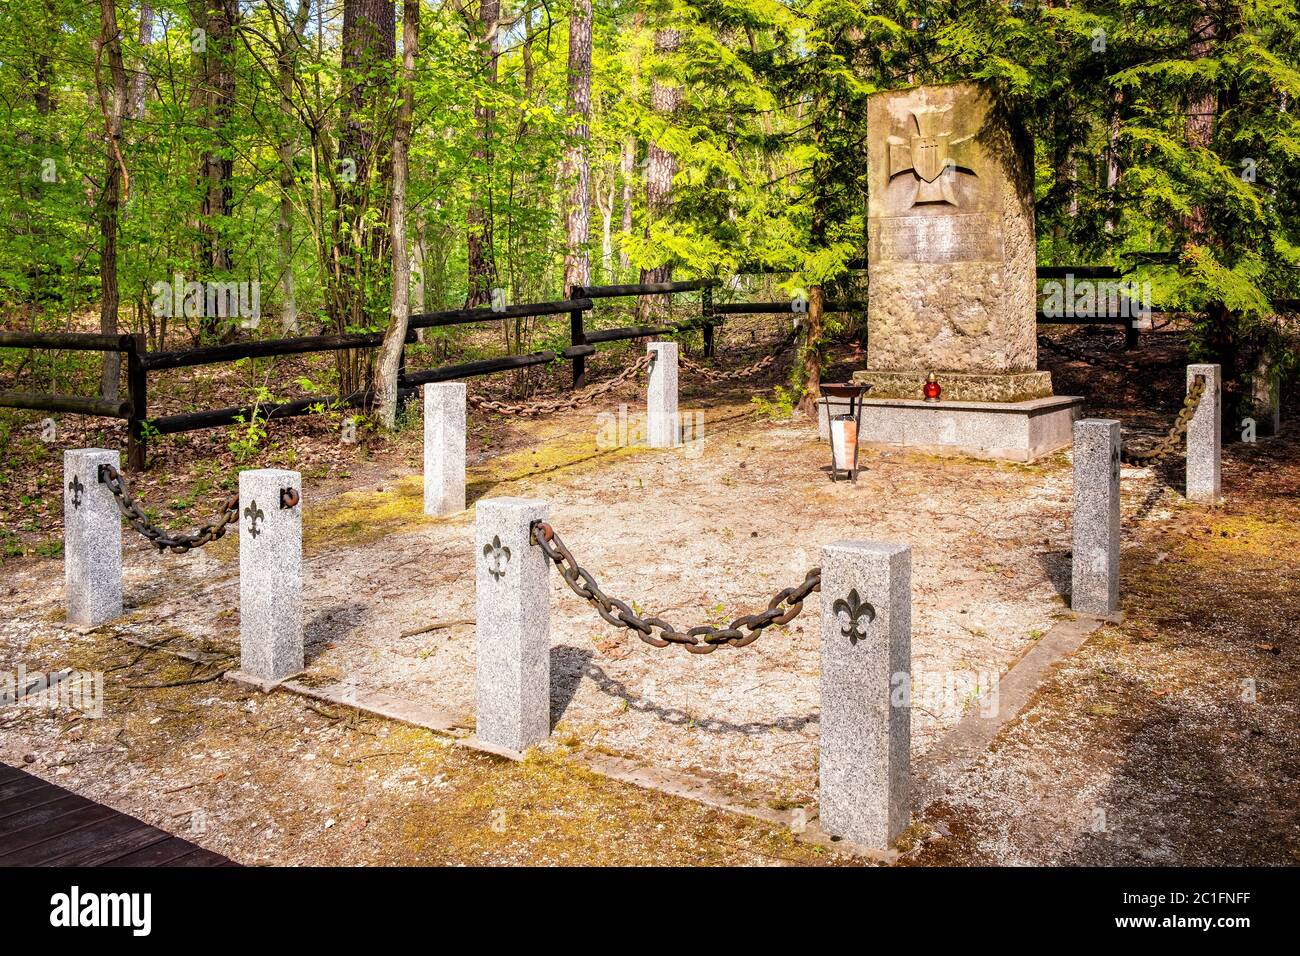 Chojnow, Mazovia / Polonia - 2020/05/10: Memoriale della foresta dei ranghi grigi - Szare Szeregi - scout eseguiti dai nazisti durante la seconda guerra mondiale sul fiume Czarna Foto Stock